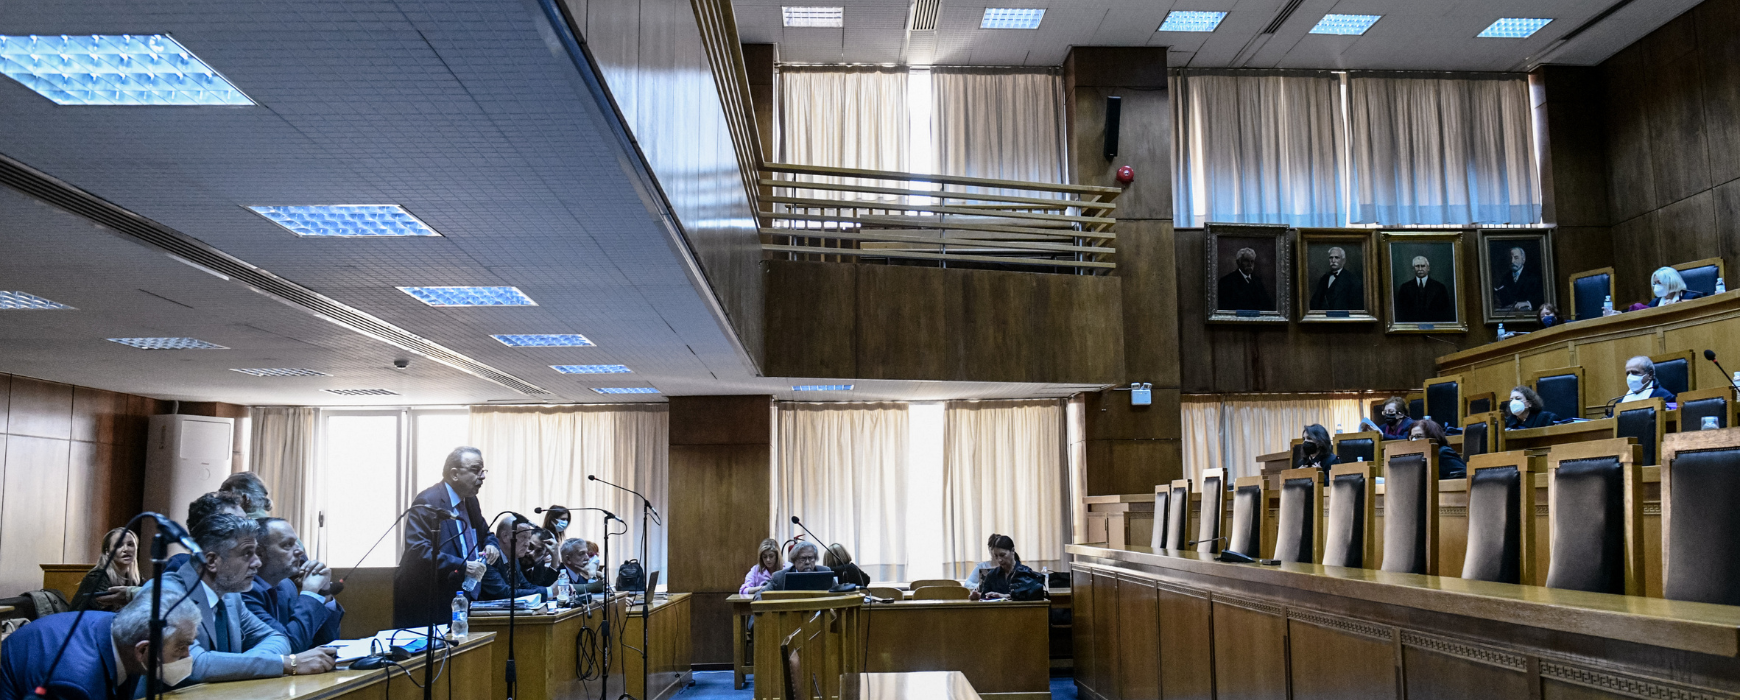 Ειδικό δικαστήριο: Το Σάββατο η απόφαση για Παπαγγελόπουλο και Τουλουπάκη